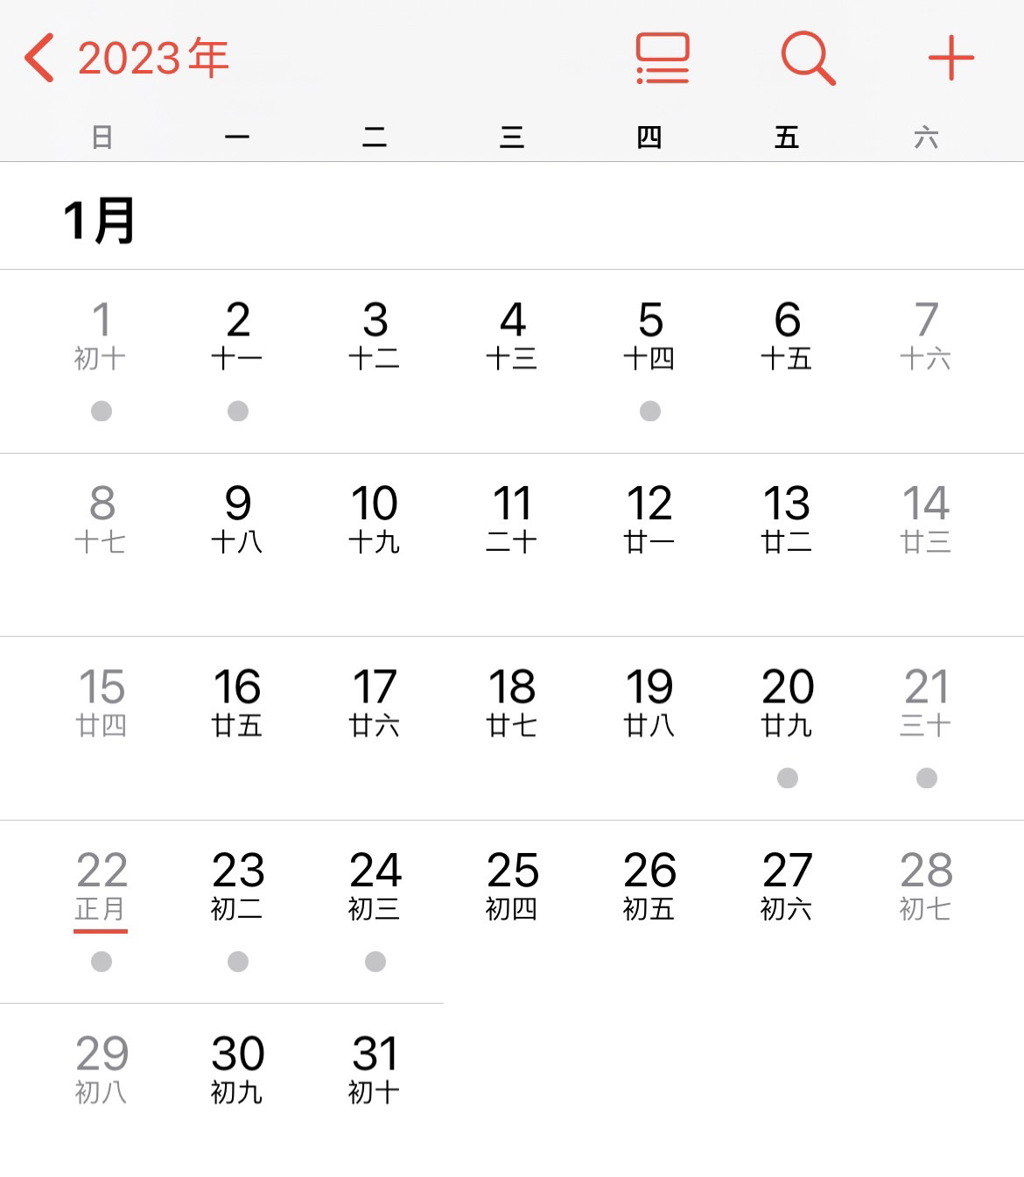 手機行事曆年假僅有4天。(圖/翻攝自iPhone)
